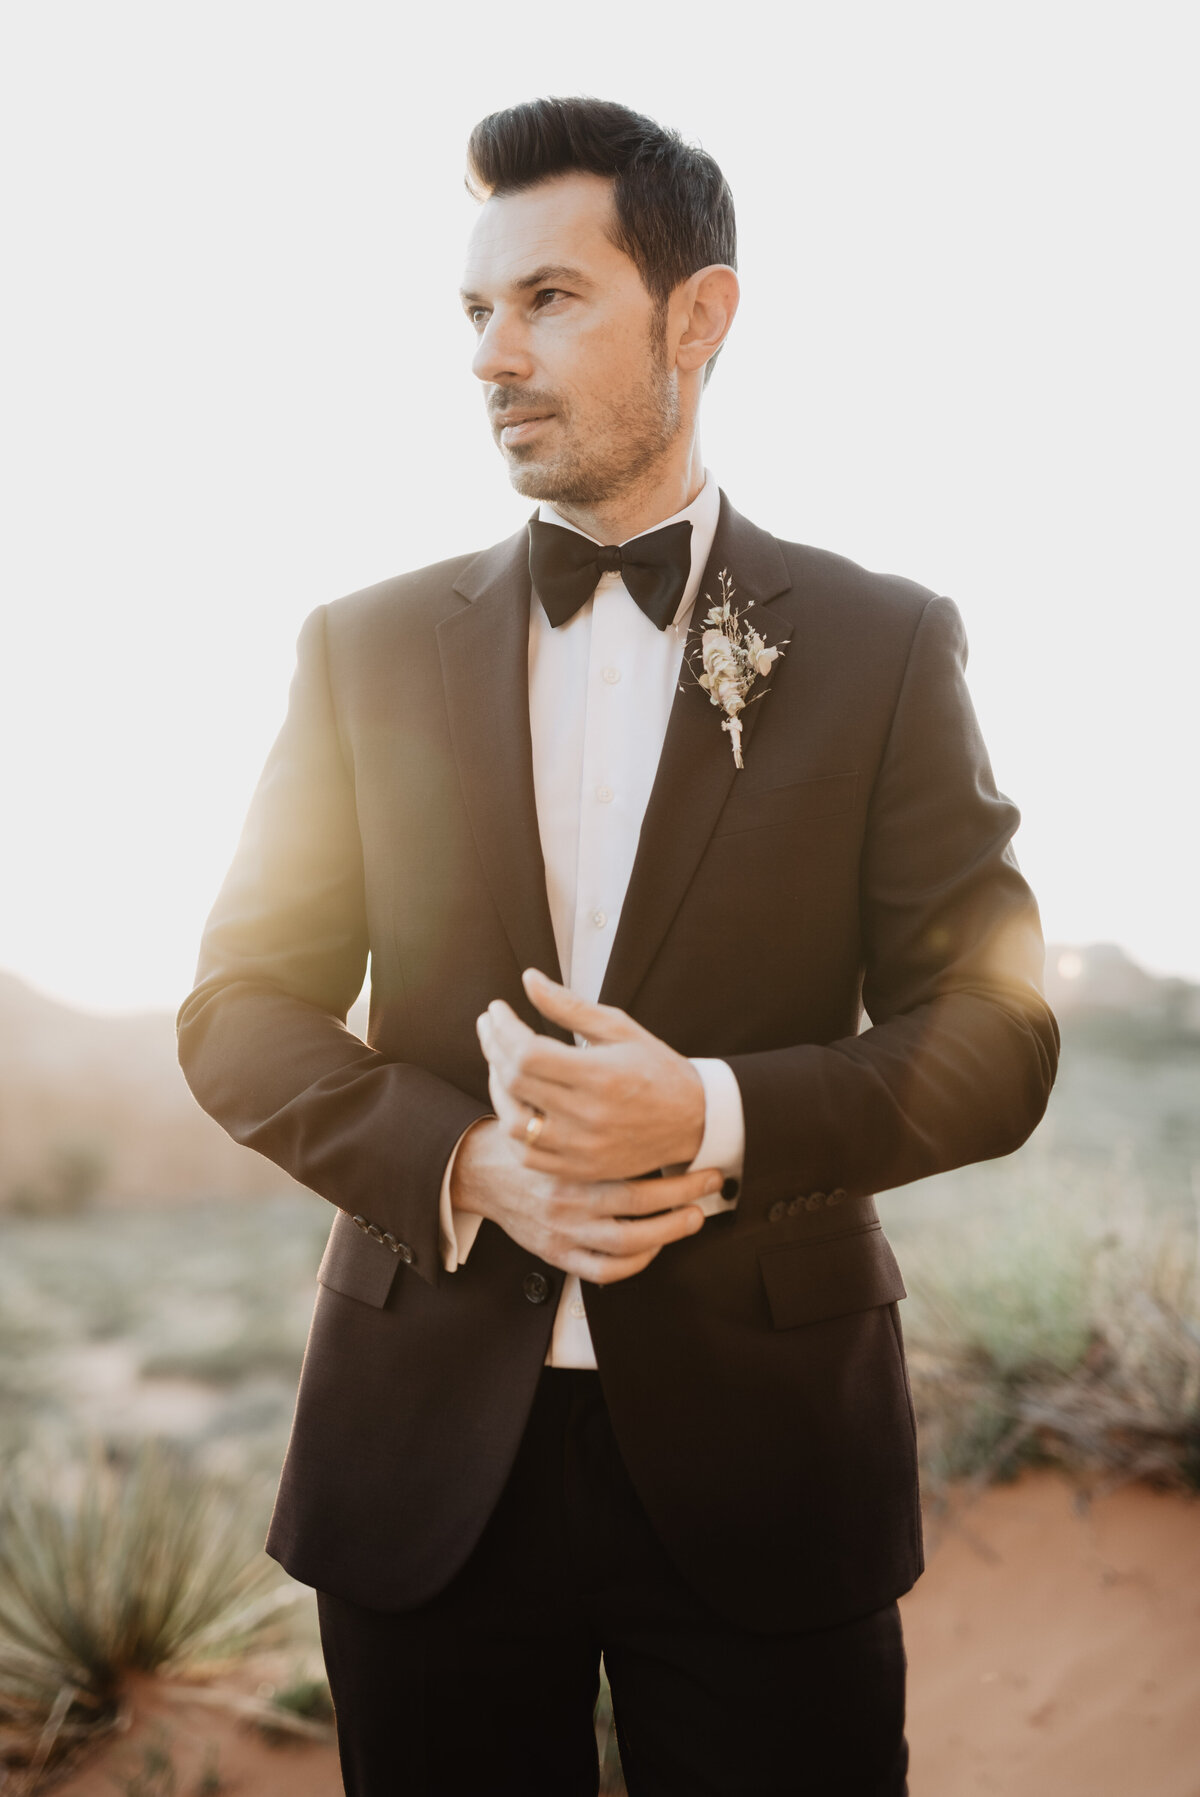 Utah elopement photographer captures groom attire